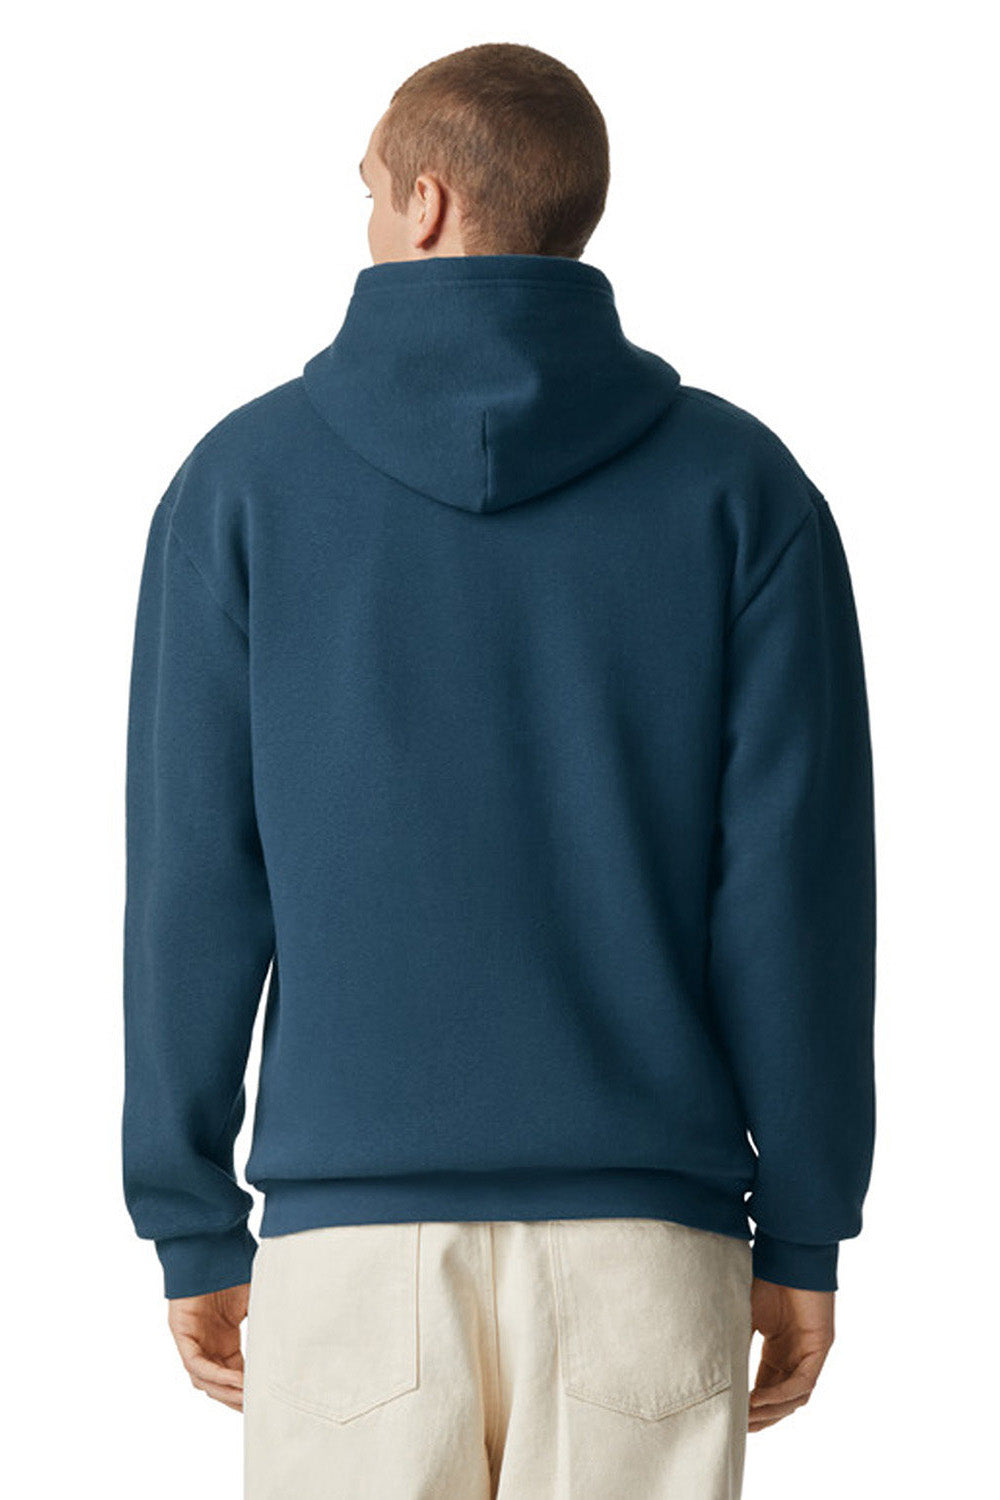 American Apparel RF497 Mens ReFlex Fleece Full Zip Hooded Sweatshirt Hoodie Sea Blue Model Back